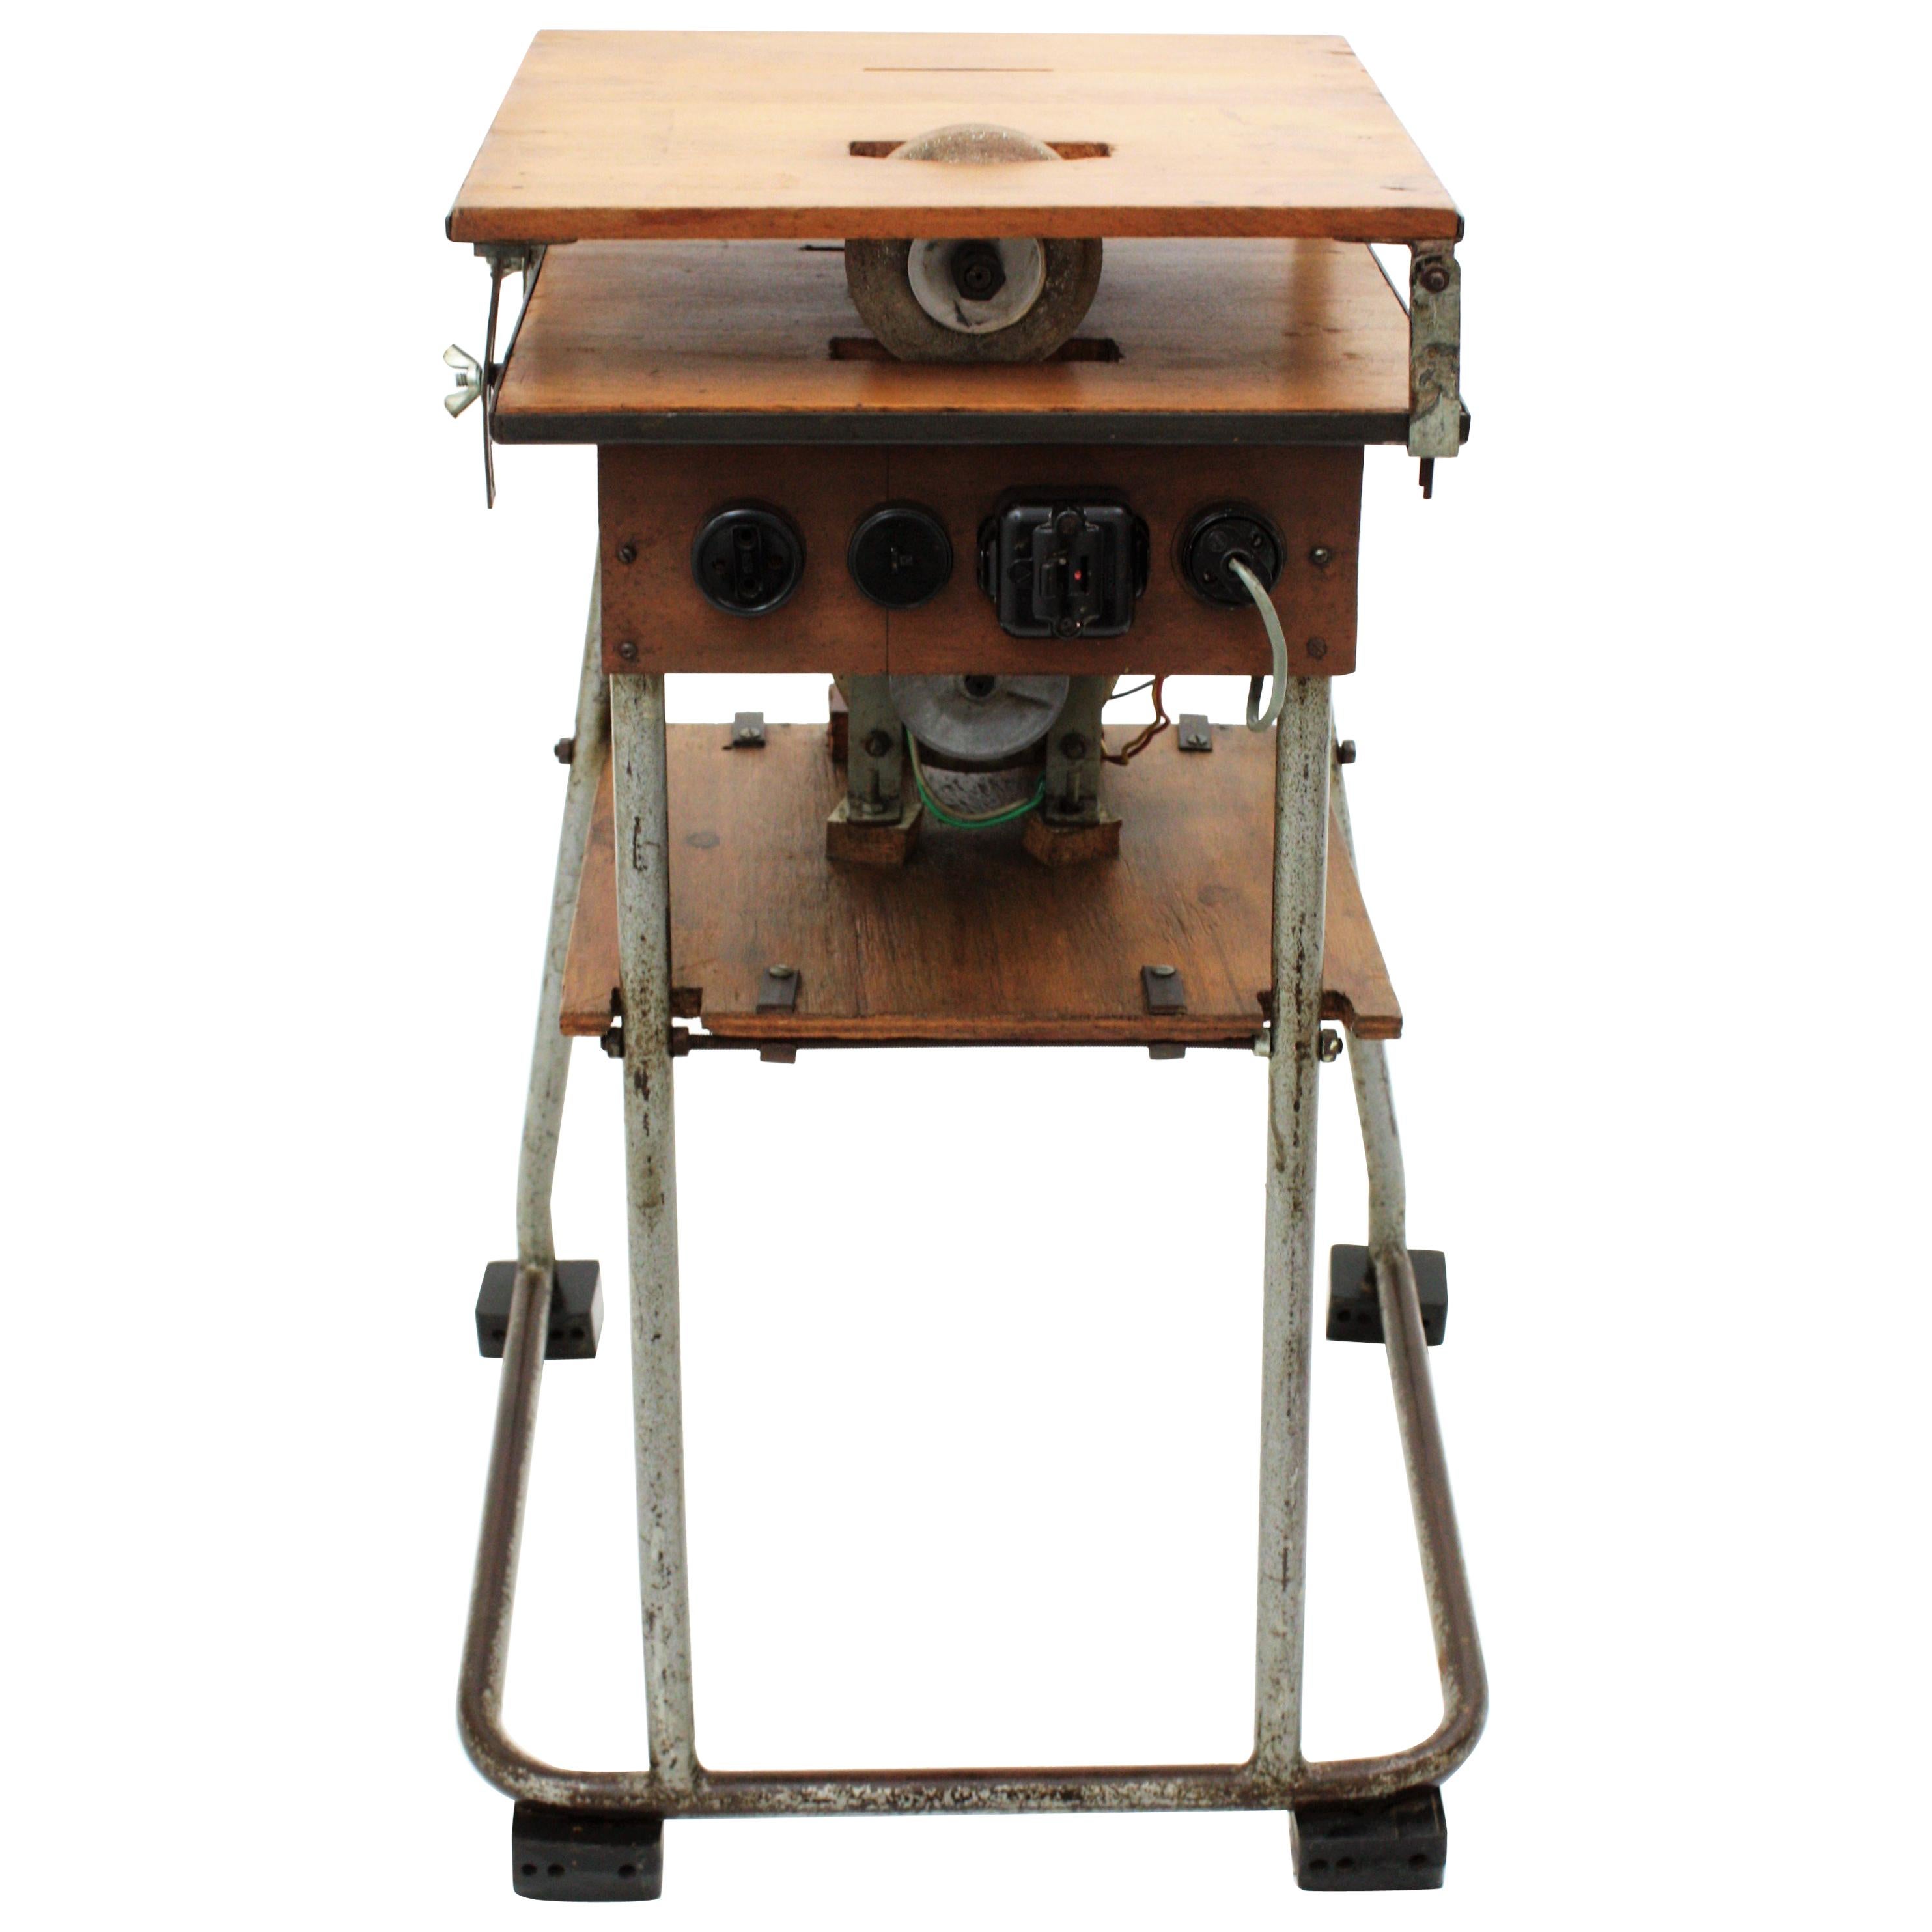 Spanische Säge- und Fräsmaschine Handwerker Industrieller Arbeitstisch oder Ständer. Spanien, 1940er Jahre.
Die Säge wurde entfernt, um die obere Fläche als Beistelltisch zu nutzen, und der Motor wurde blockiert. 
Ein schöner Tisch, der als End-